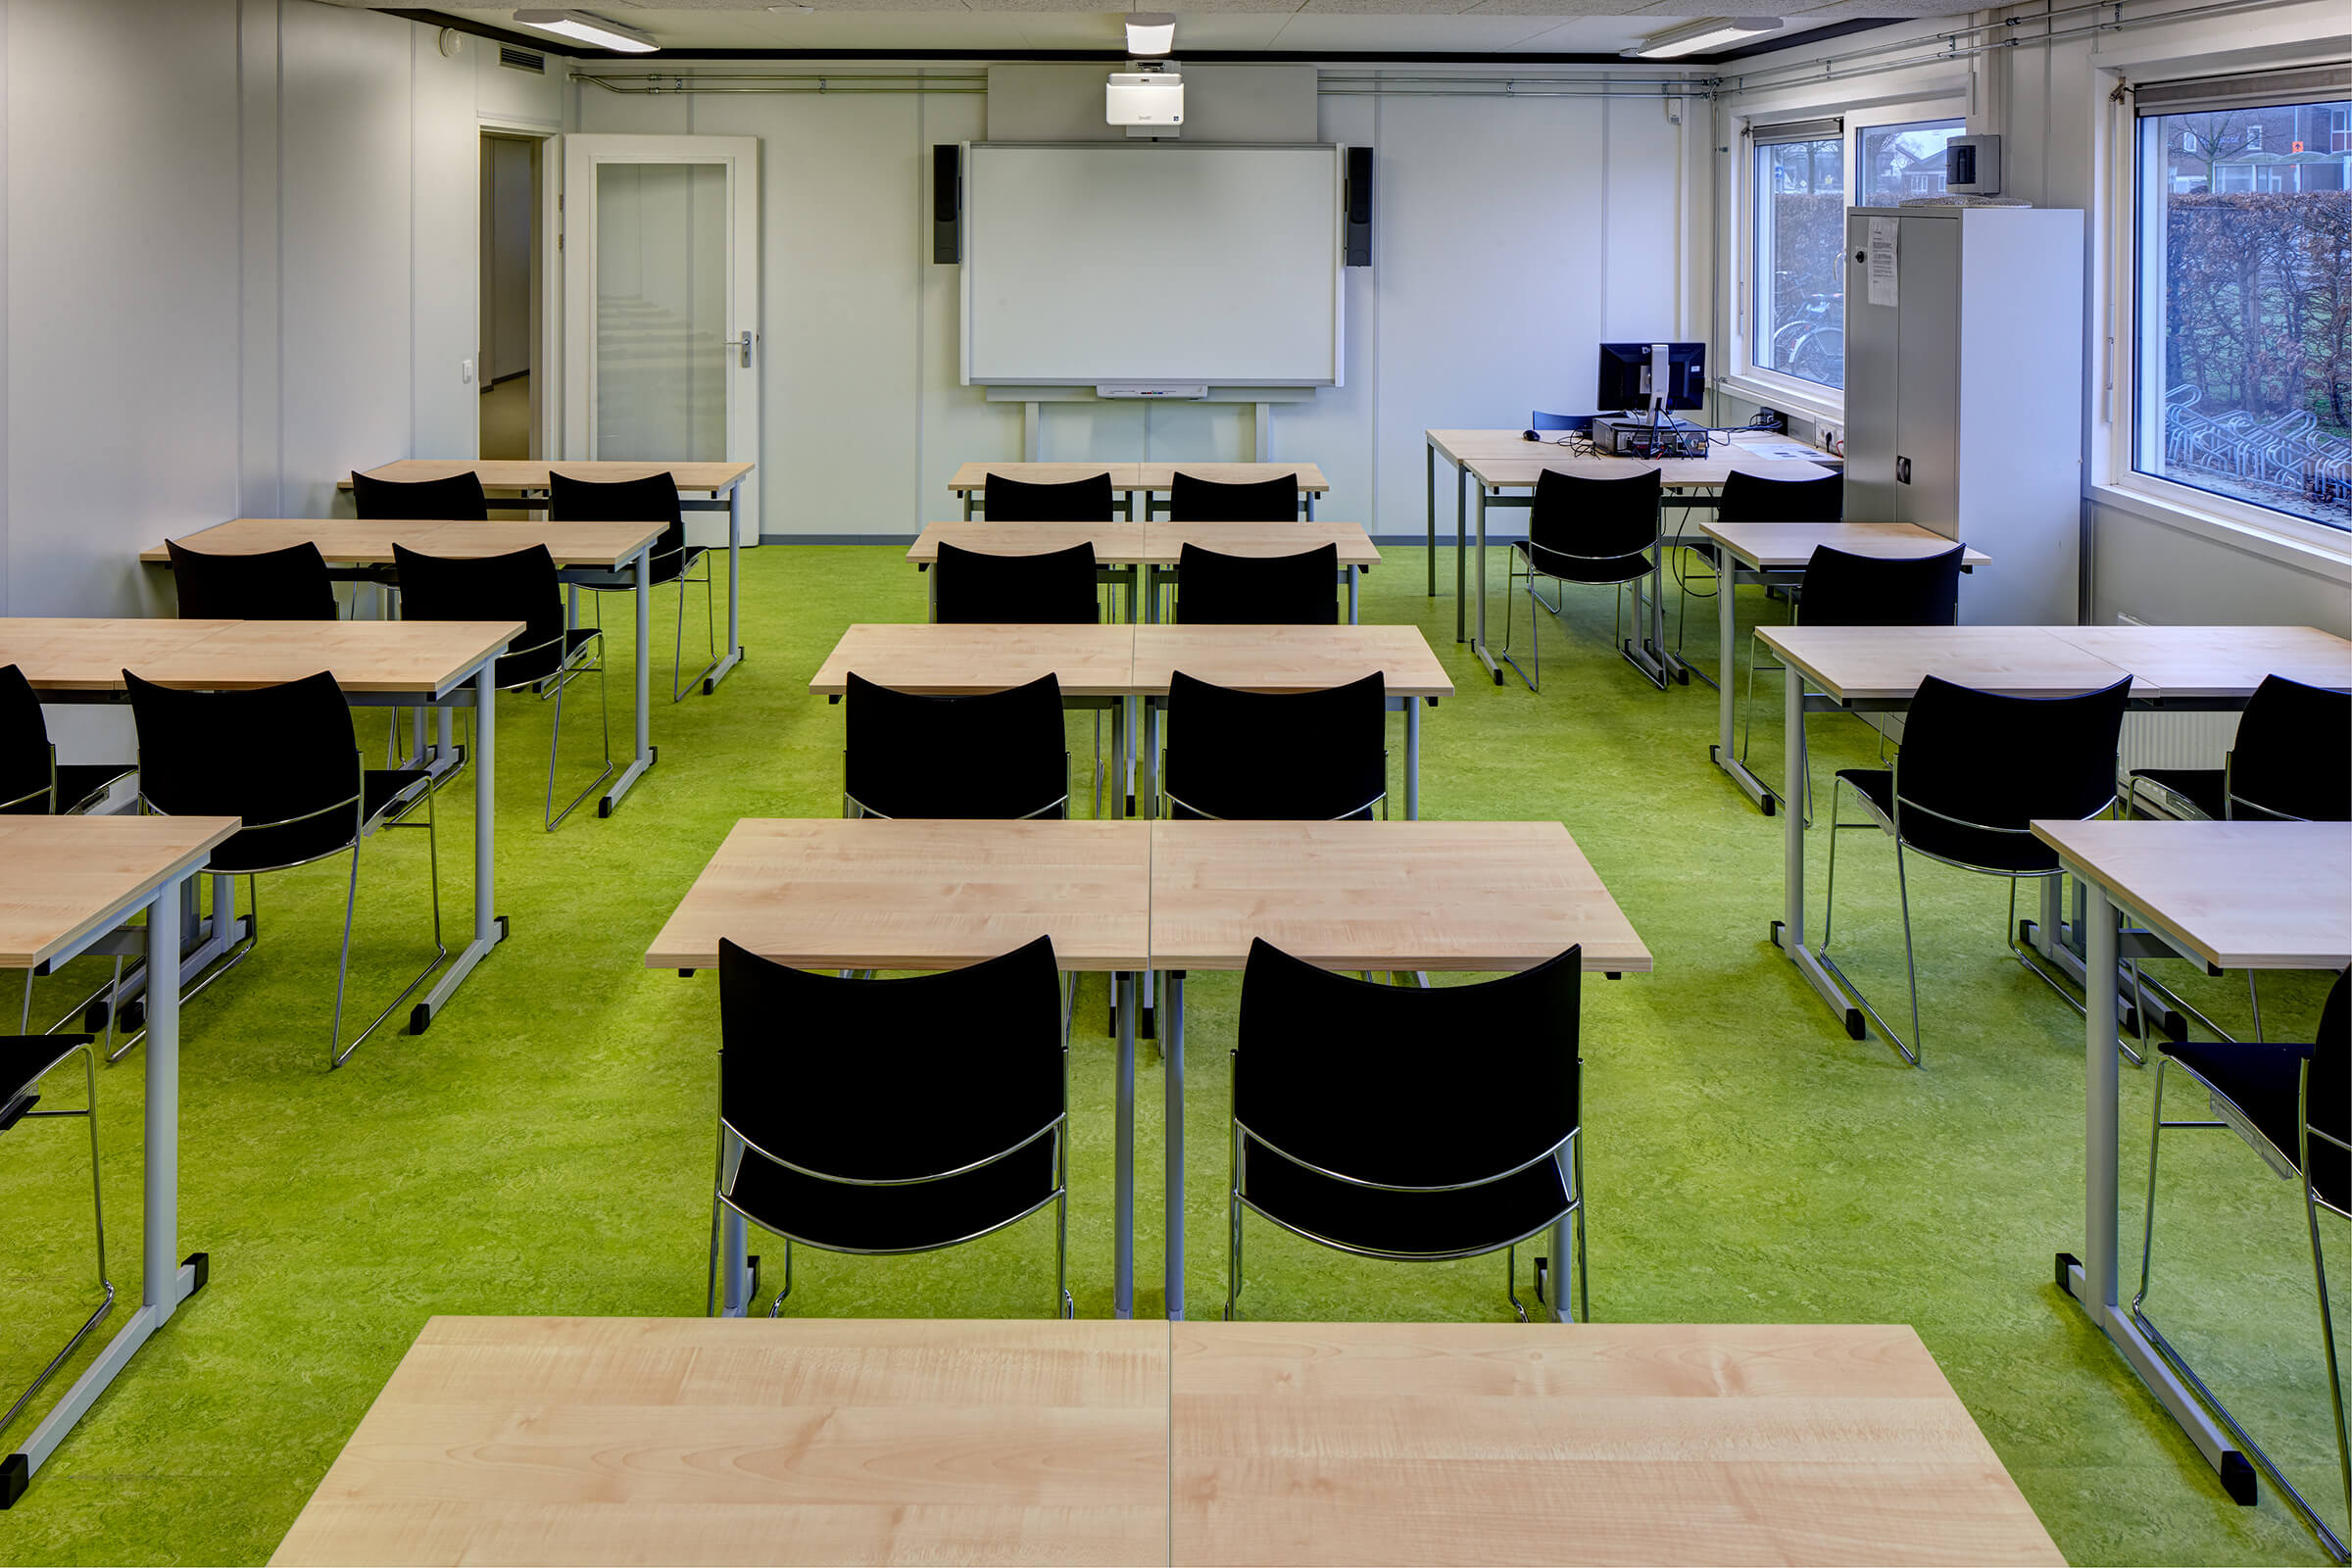 Les salles de classe temporaires étaient meublées de chaises Curvy noires et de tables basiques. 